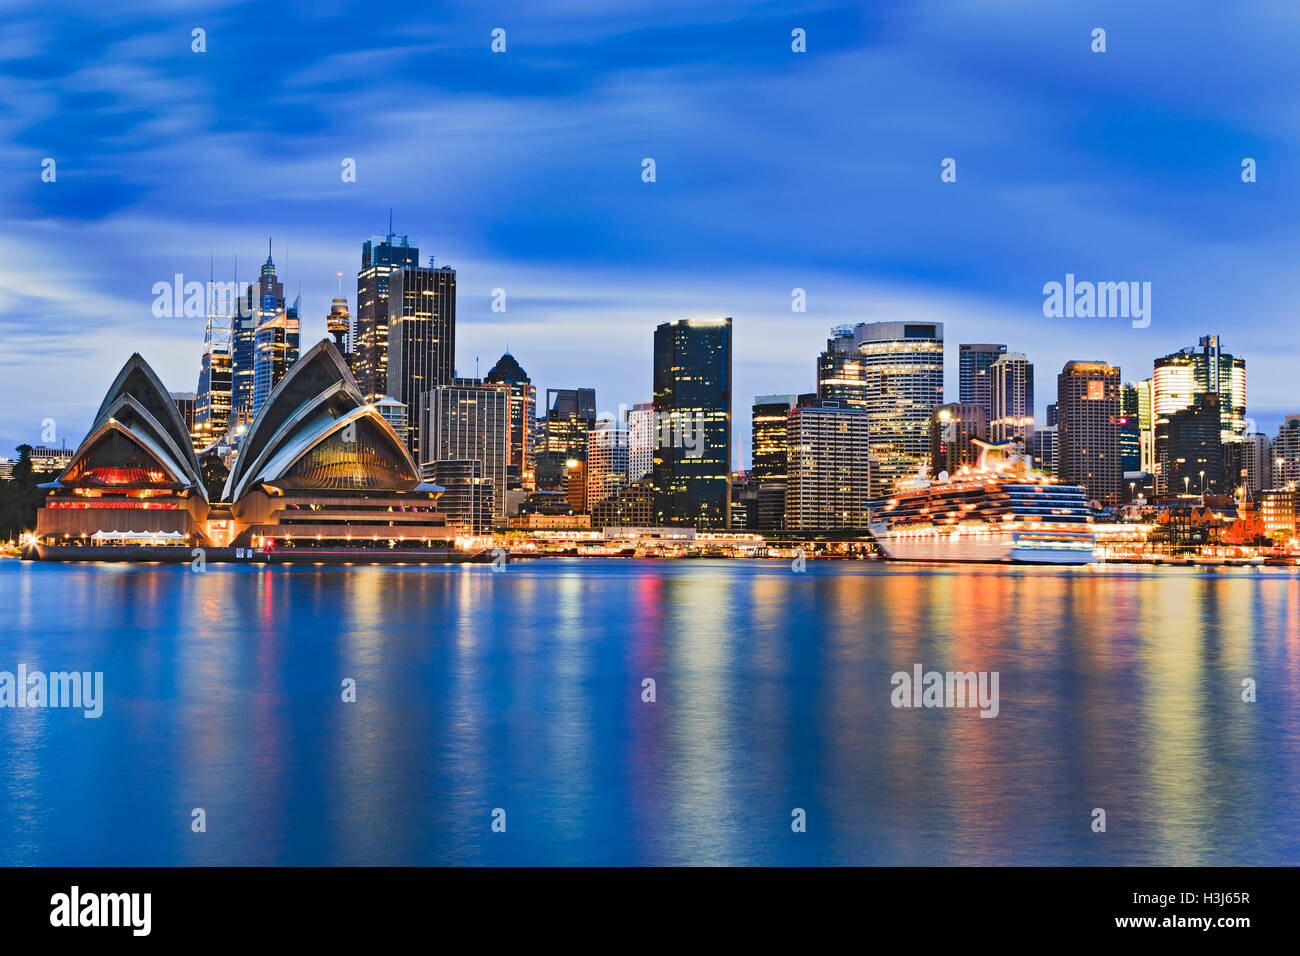 Paesaggio urbano della città di Sydney CBD attraverso il porto di sunrise riflettendo le luci dei grattacieli e punto di riferimento importante in ancora blurr Foto Stock